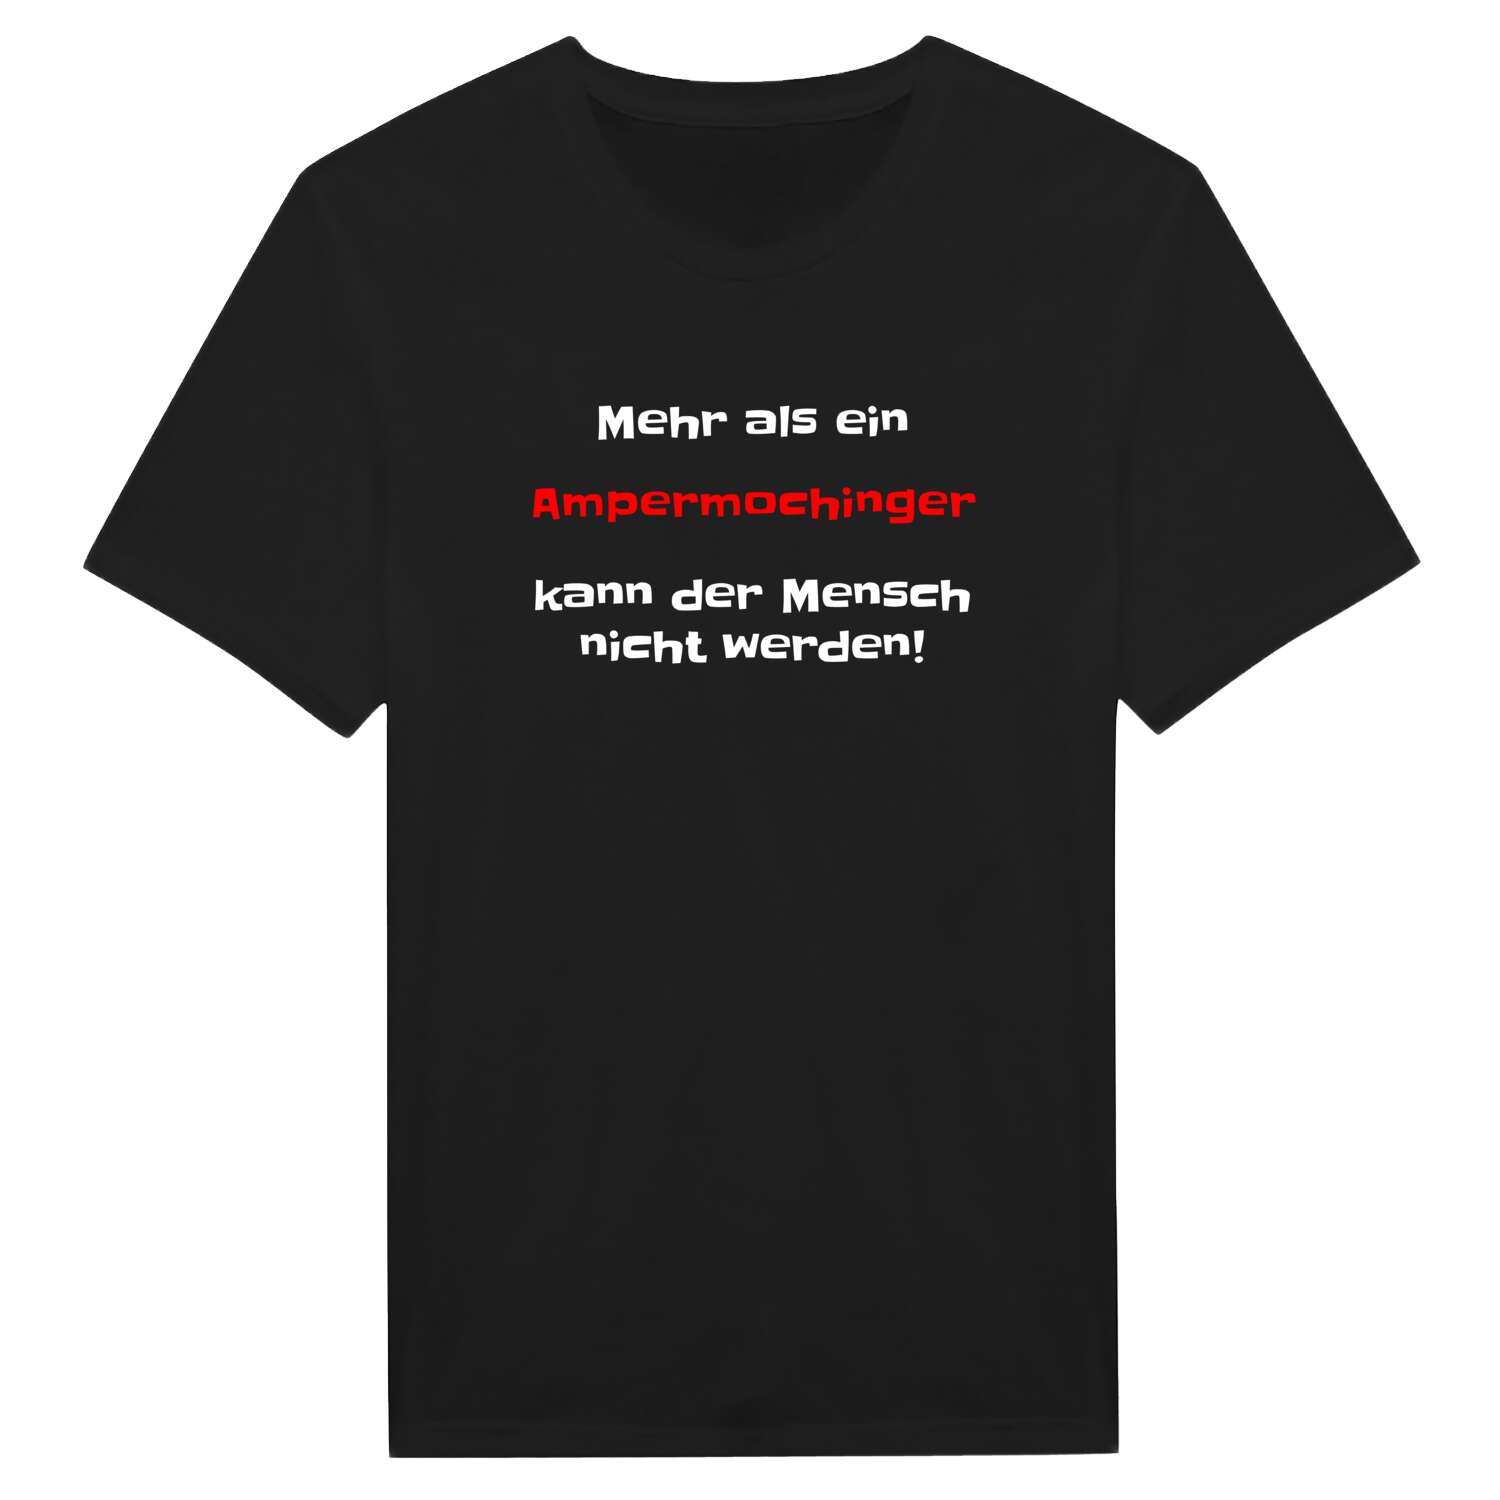 Ampermoching T-Shirt »Mehr als ein«